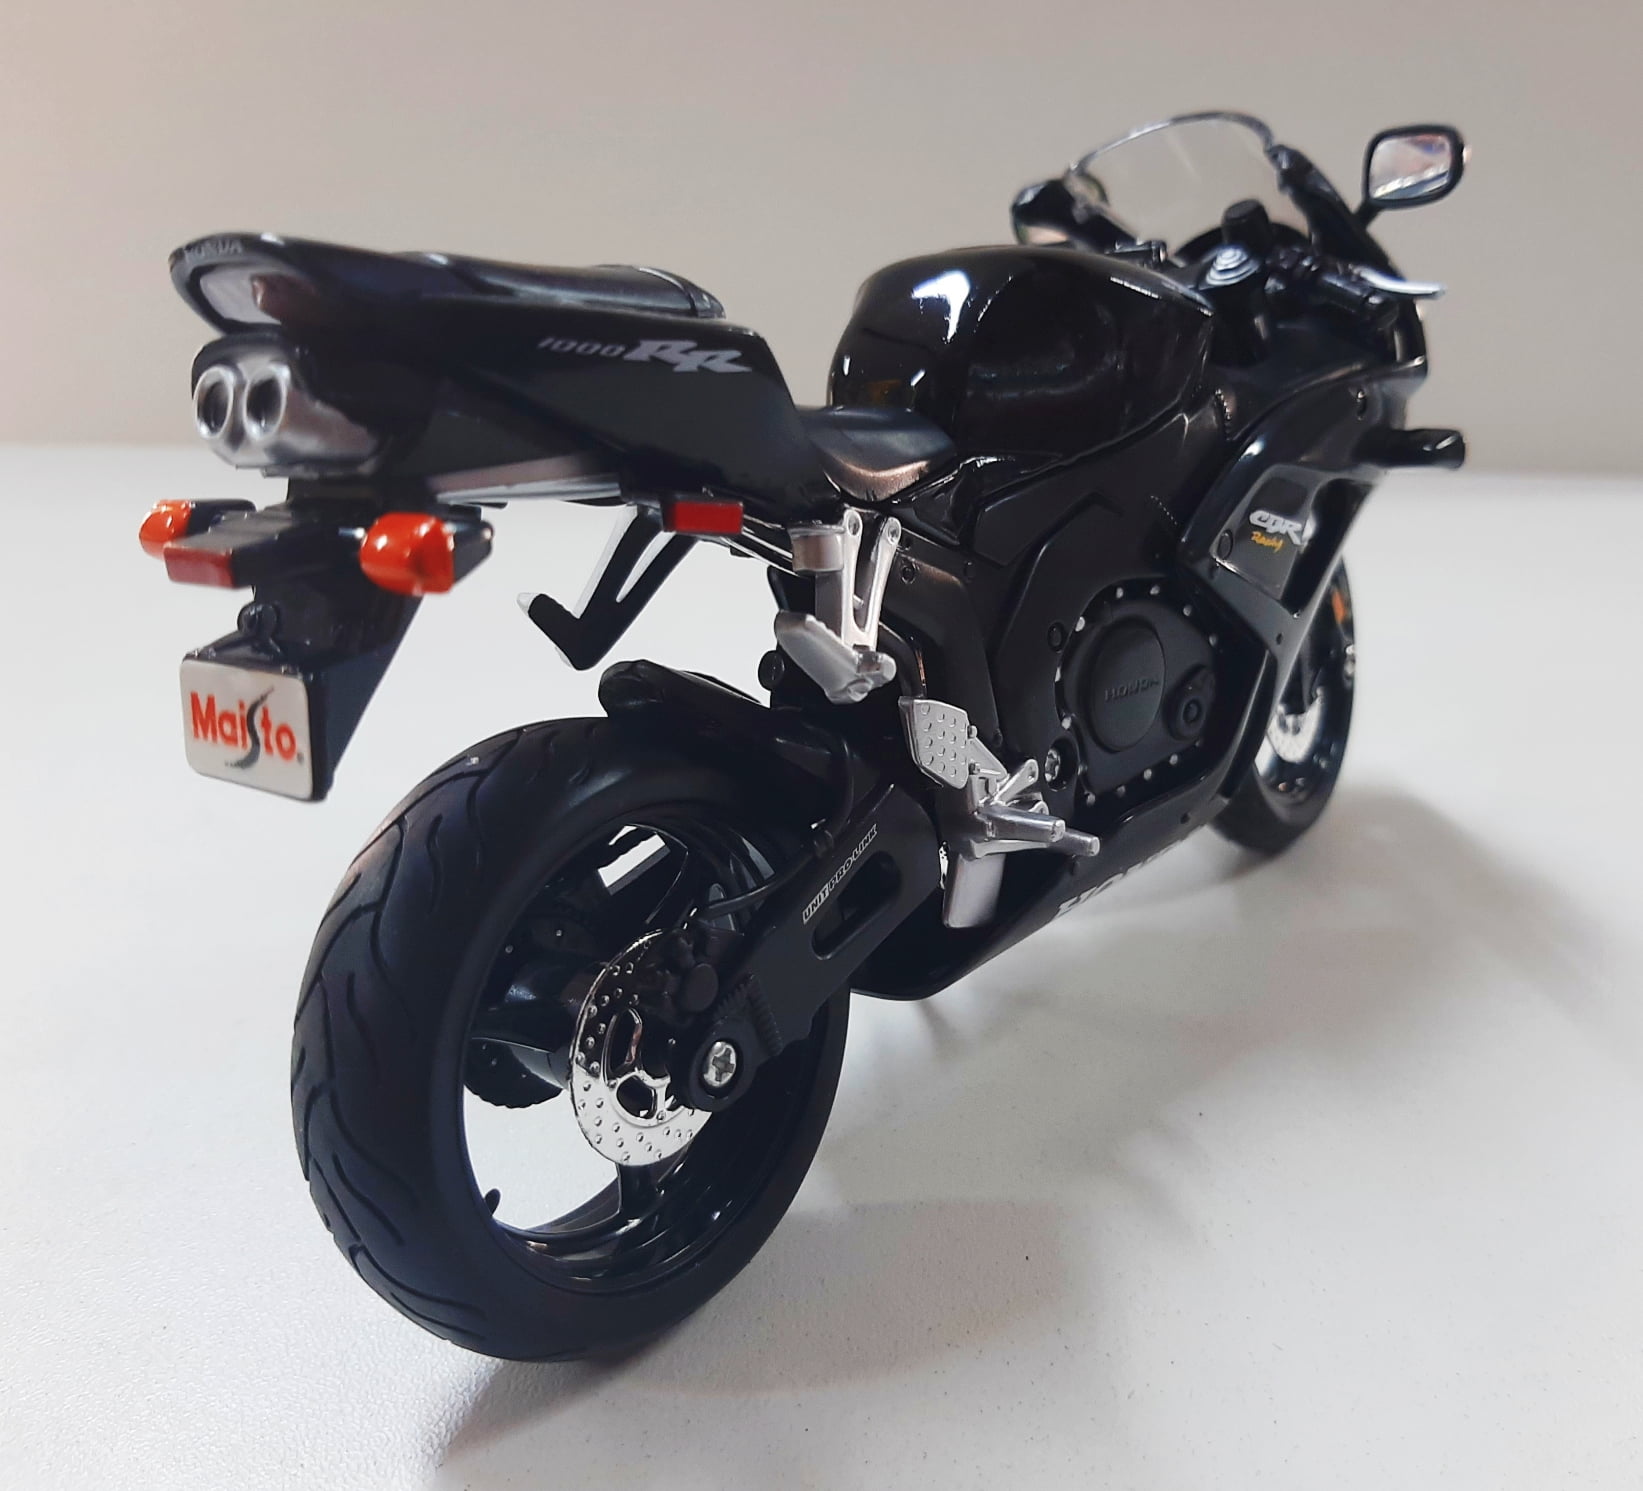 Moto de Ferro Corrida Miniatura Honda CBR1000RR 1:12 na Caixa